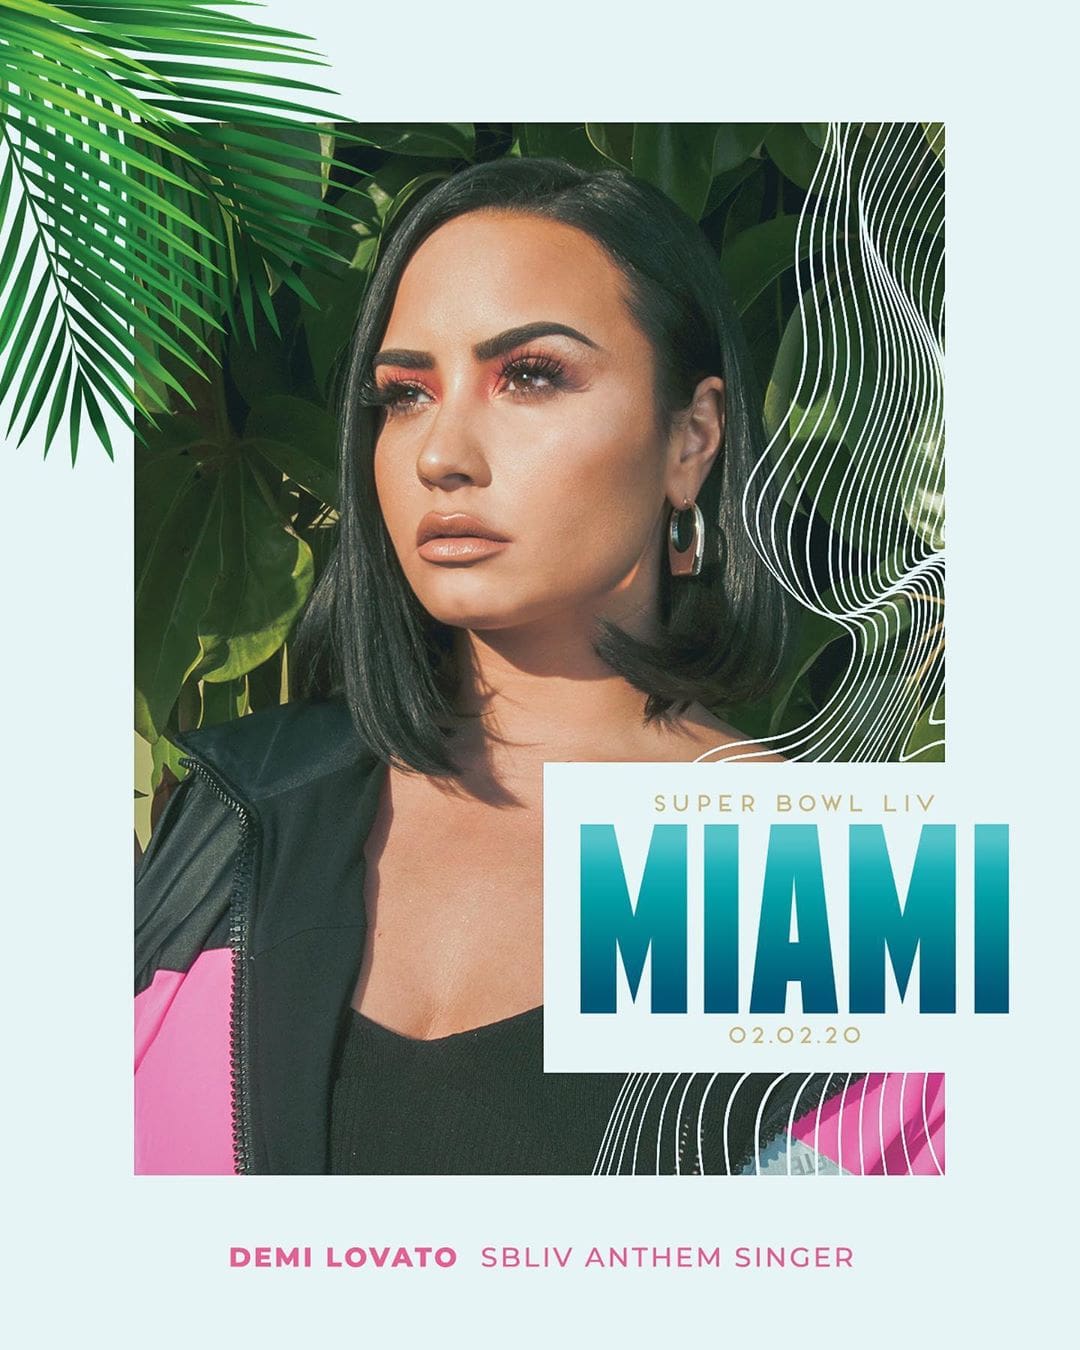 Site revela planos de Demi Lovato para novo álbum e possível nova turnê